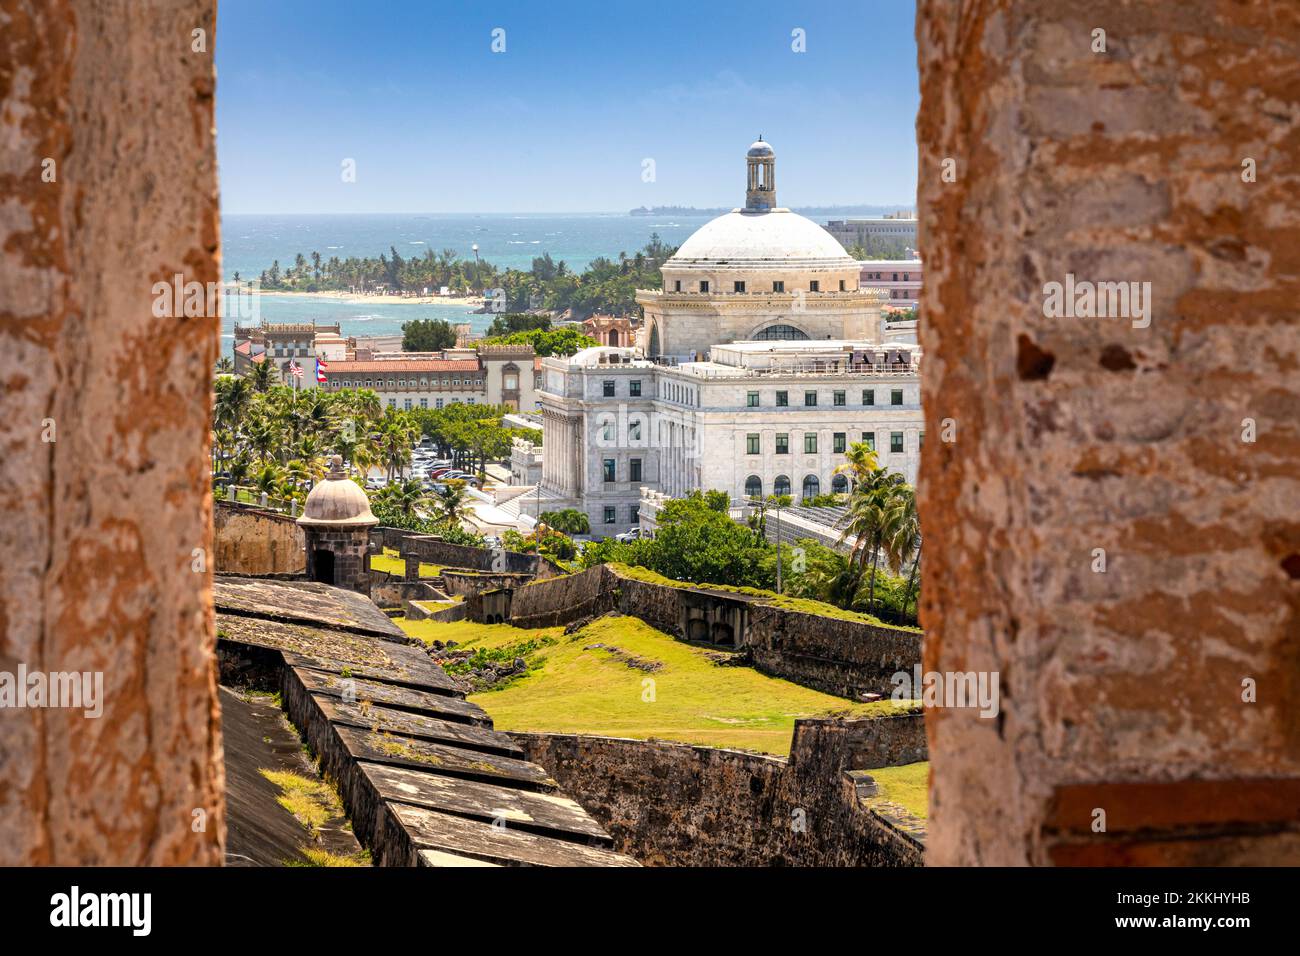 Das Capitol Building, das vom San Cristobal Castle in Old San Juan auf der tropischen karibischen Insel Puerto Rico, USA, aus zu sehen ist. Stockfoto